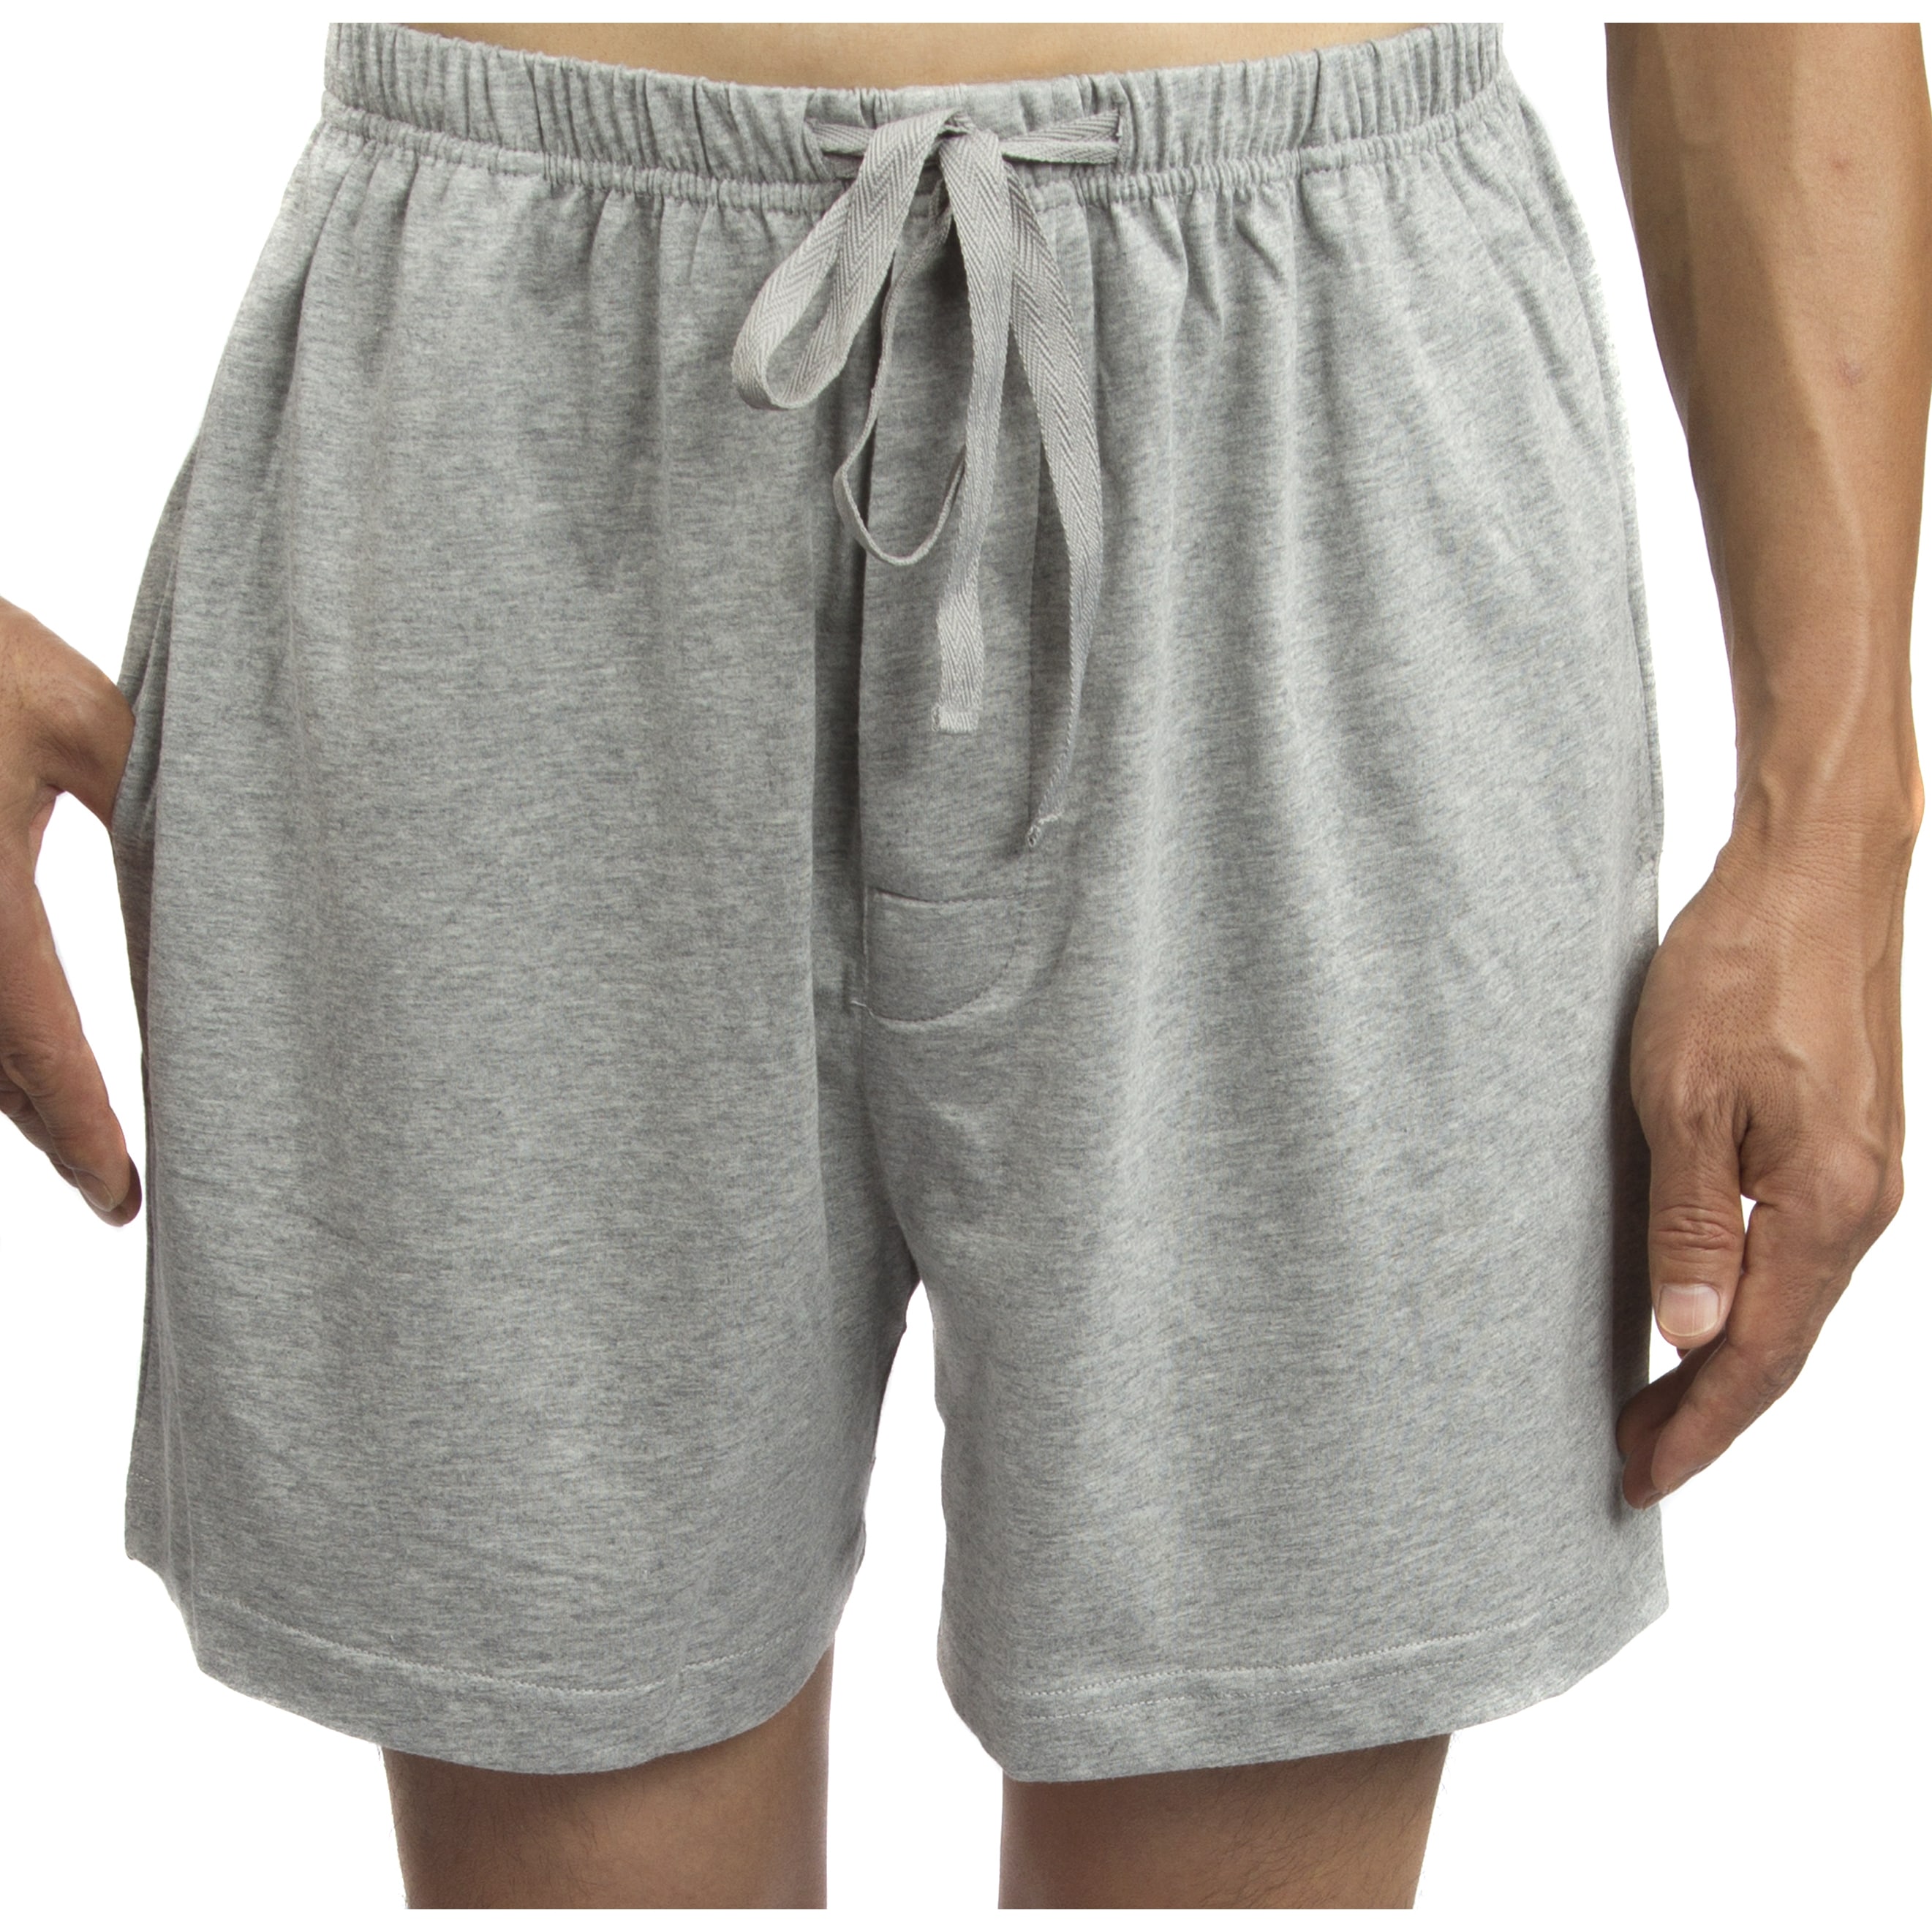 men's cotton jersey shorts